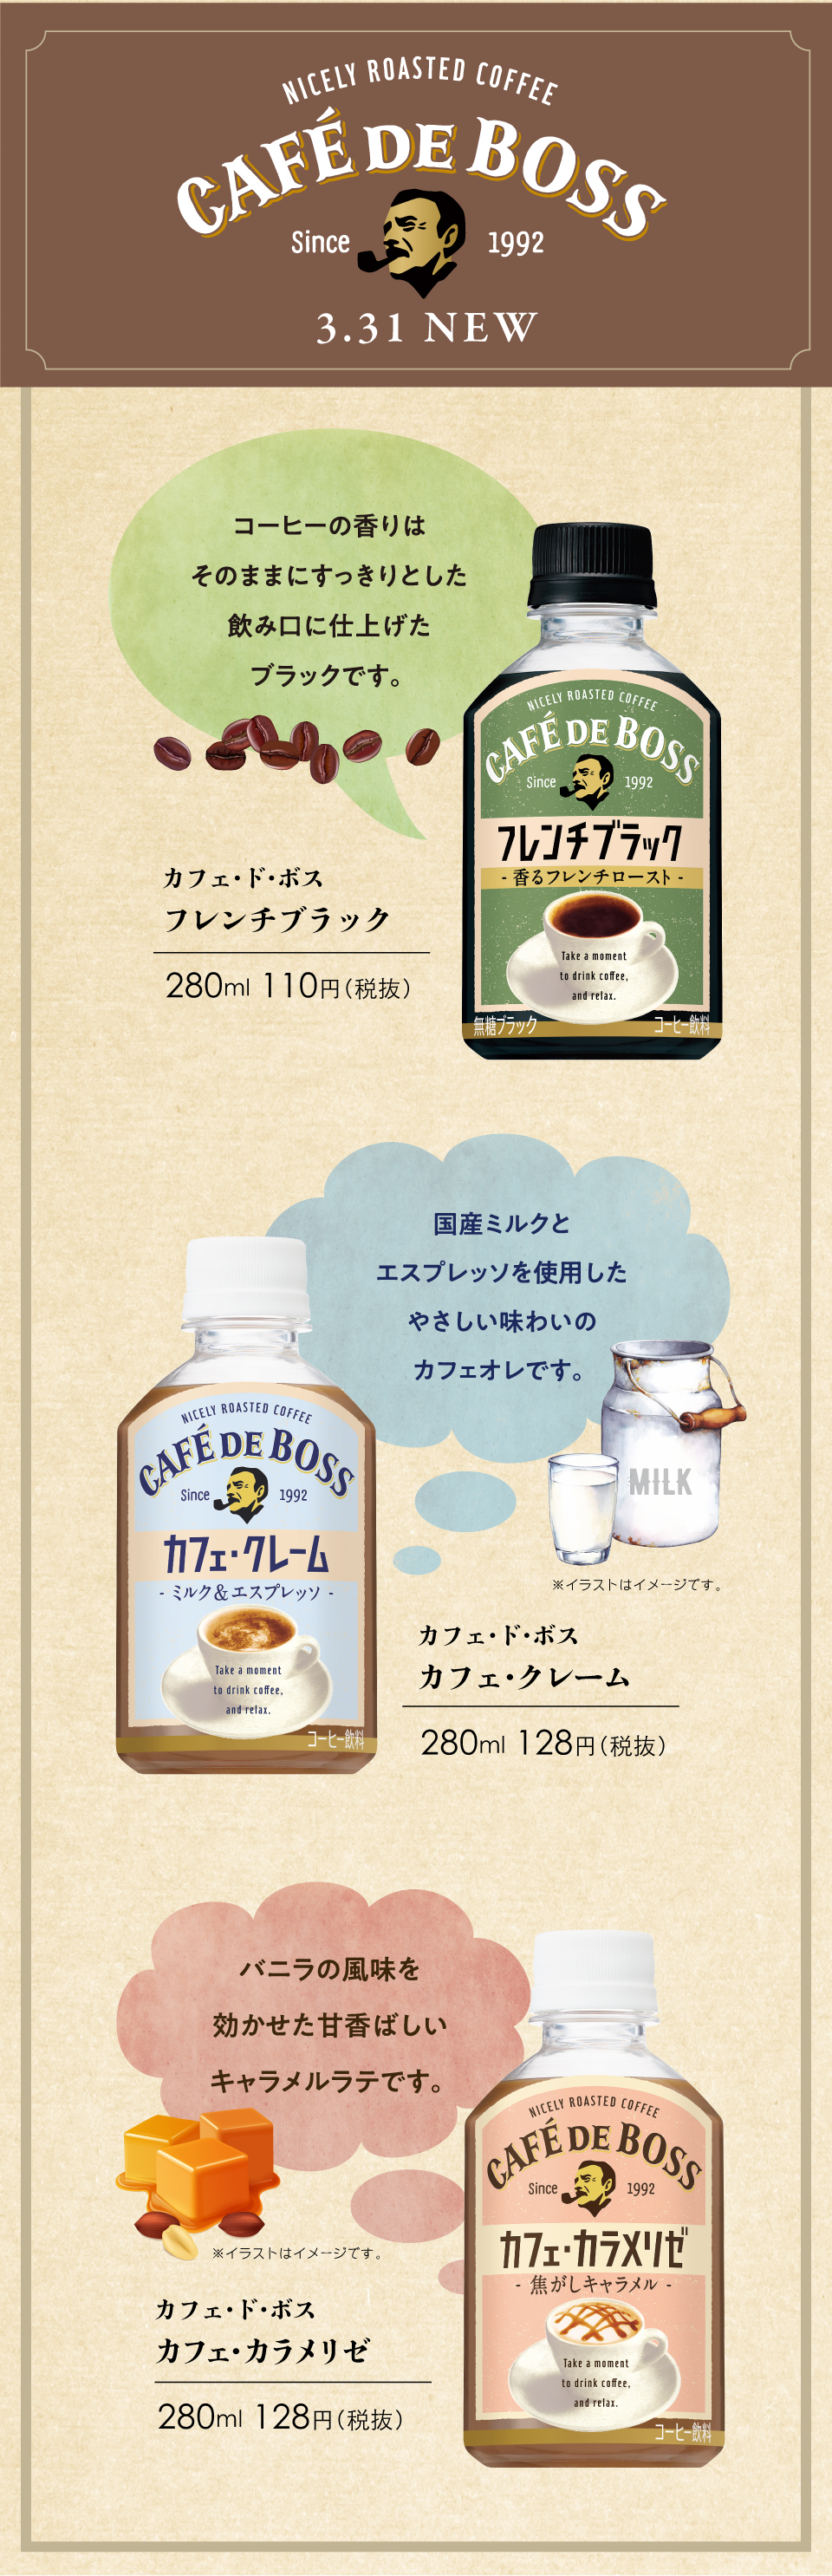 NICELY ROASTED COFFEE CAFE DE BOSS since 1992 3.31NEW コーヒーの香りはそのままにすっきりとした飲み口に仕上げたブラックです。 カフェ・ド・ボス フレンチブラック 280mL 110円（税抜） 国産ミルクとエスプレッソを使用したやさしい味わいのカフェオレです。 カフェ・ド・ボス カフェ・クレーム 280mL 128円（税抜） バニラの風味を効かせた甘香ばしいキャラメルラテです。 カフェ・ド・ボス カフェ・カラメリゼ 280mL 128円（税抜）